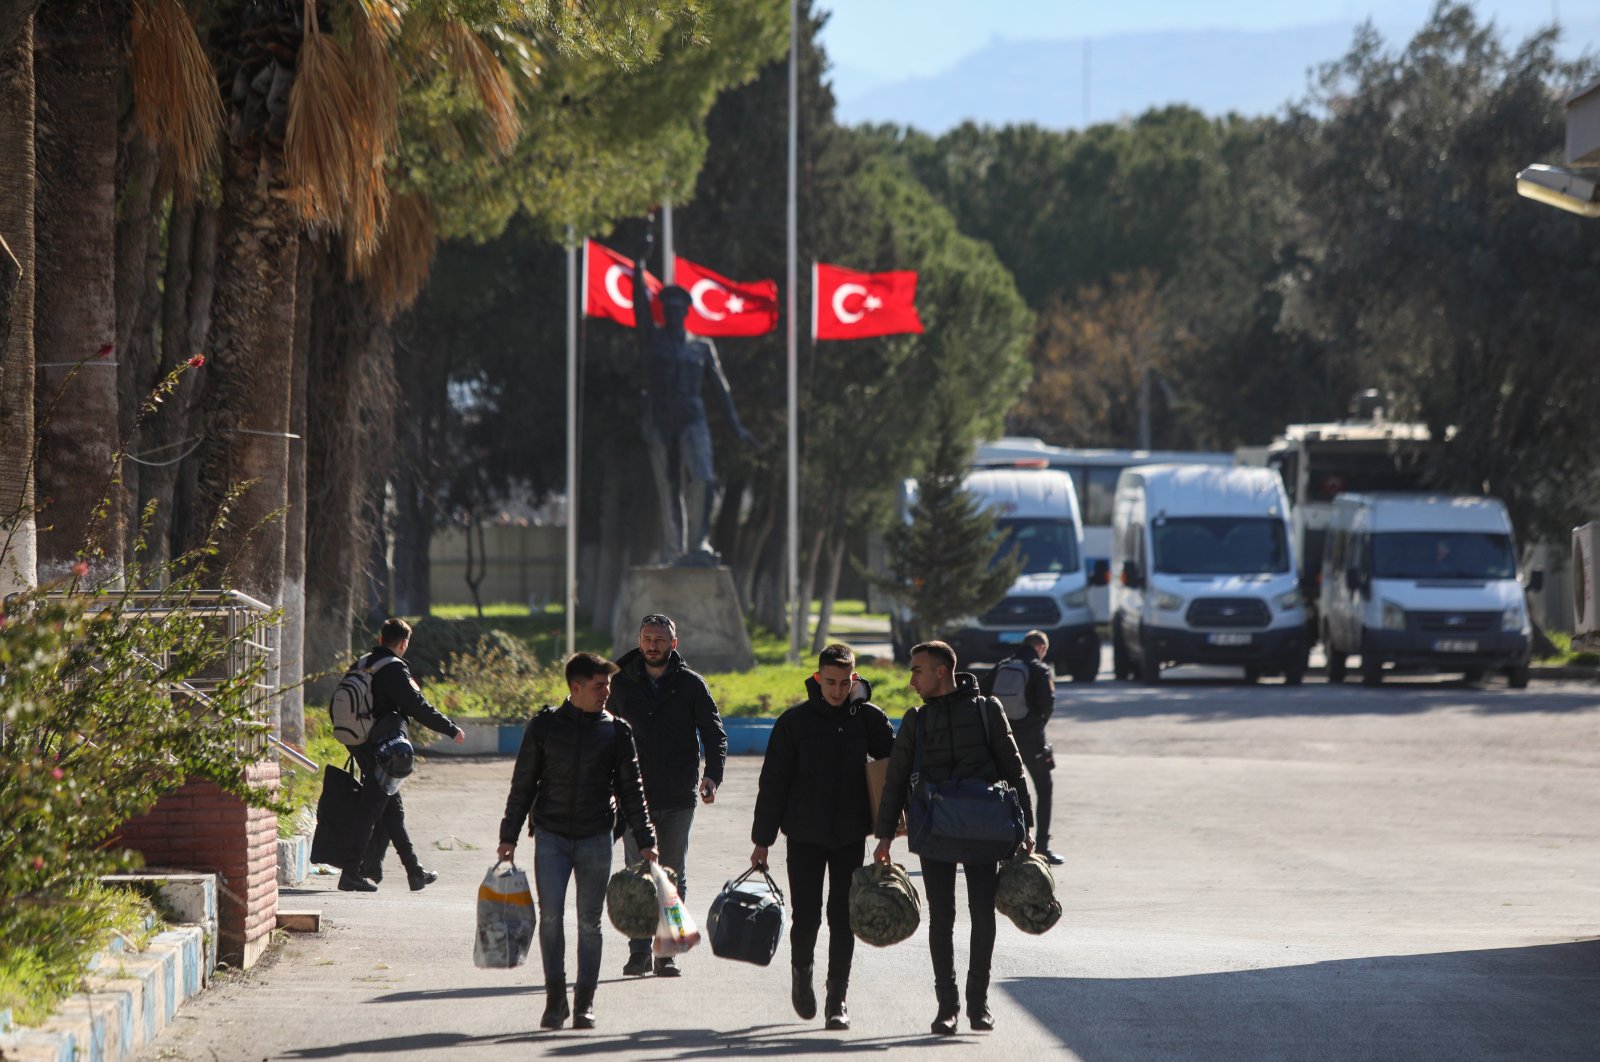 Umat ​​manusia menghadapi ujian berat di tengah bencana gempa kembar Türkiye